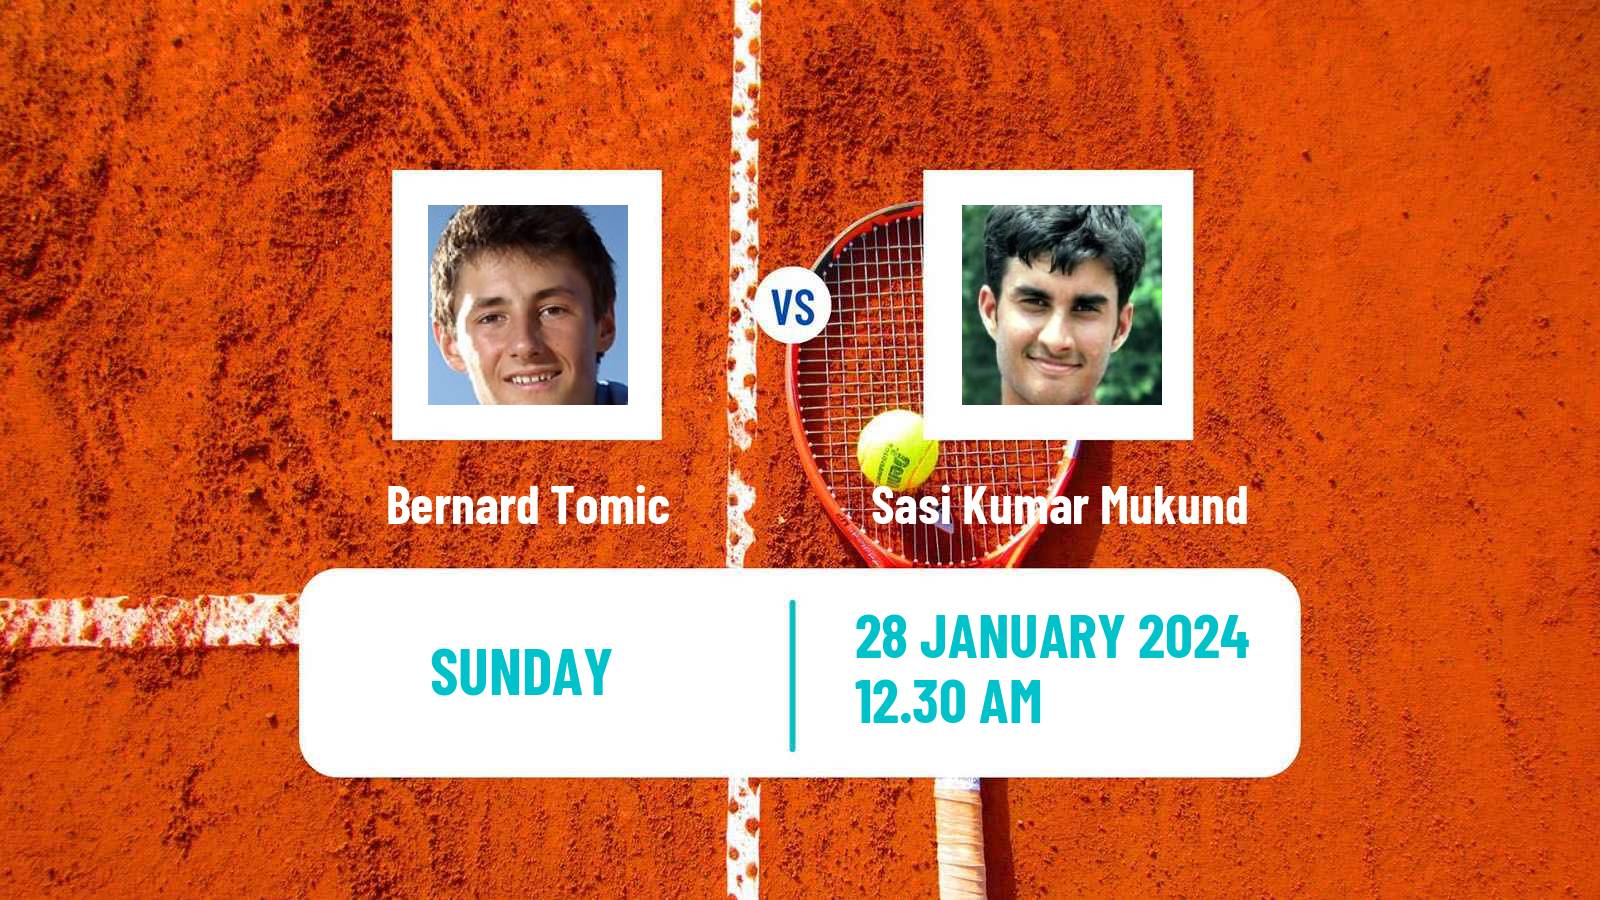 Tennis ITF M25 Chennai Men Bernard Tomic - Mukund Sasikumar